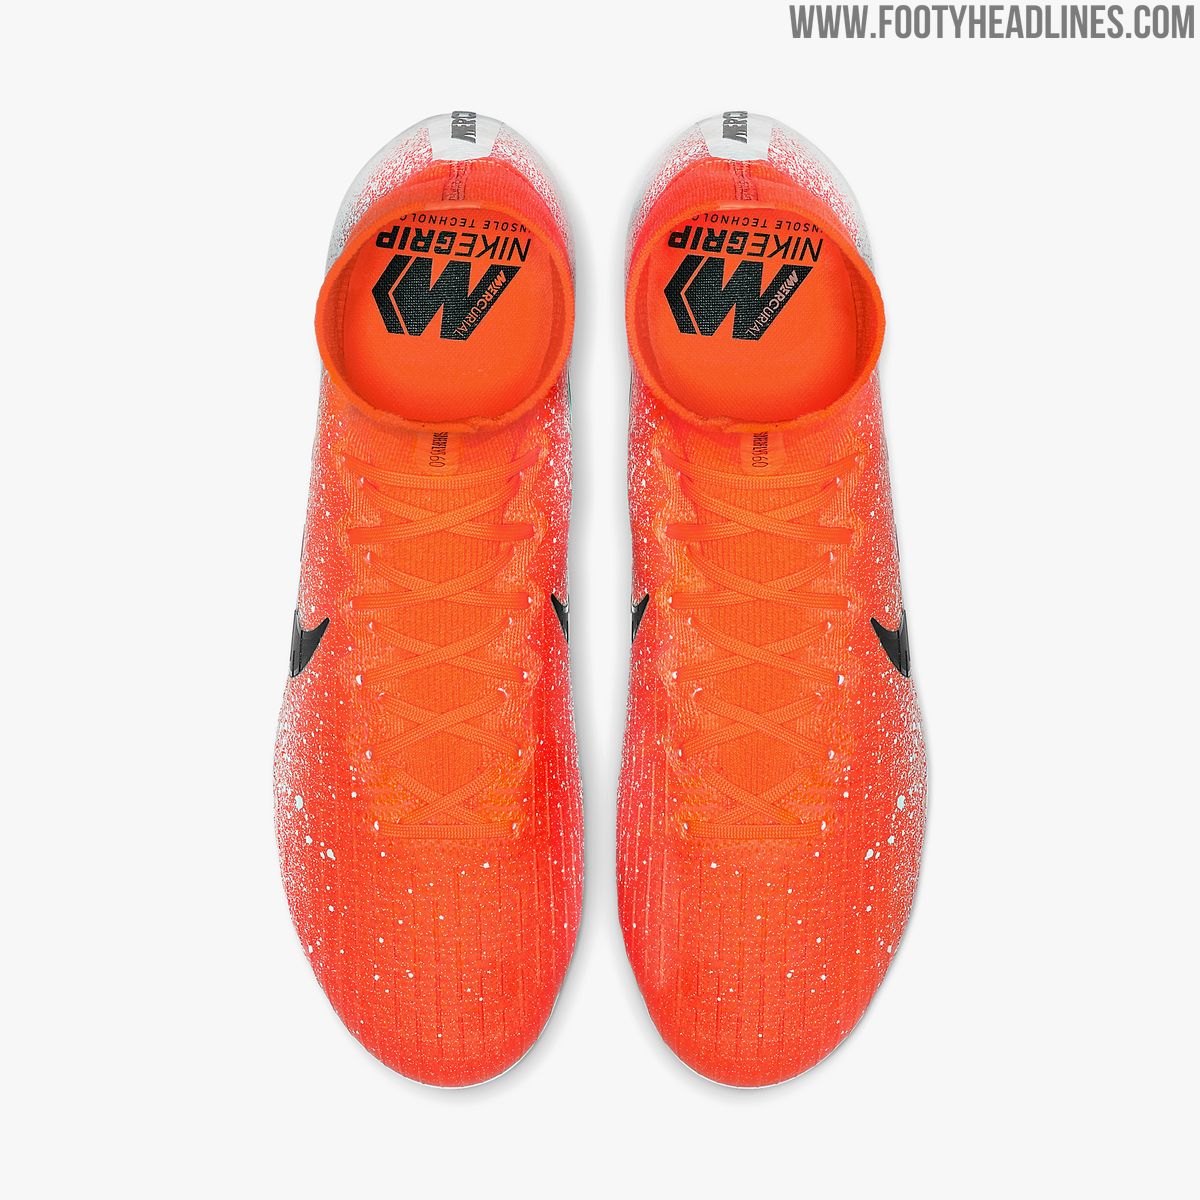 Orange & Nike Mercurial VI Pack' Boots Revealed - Footy Headlines